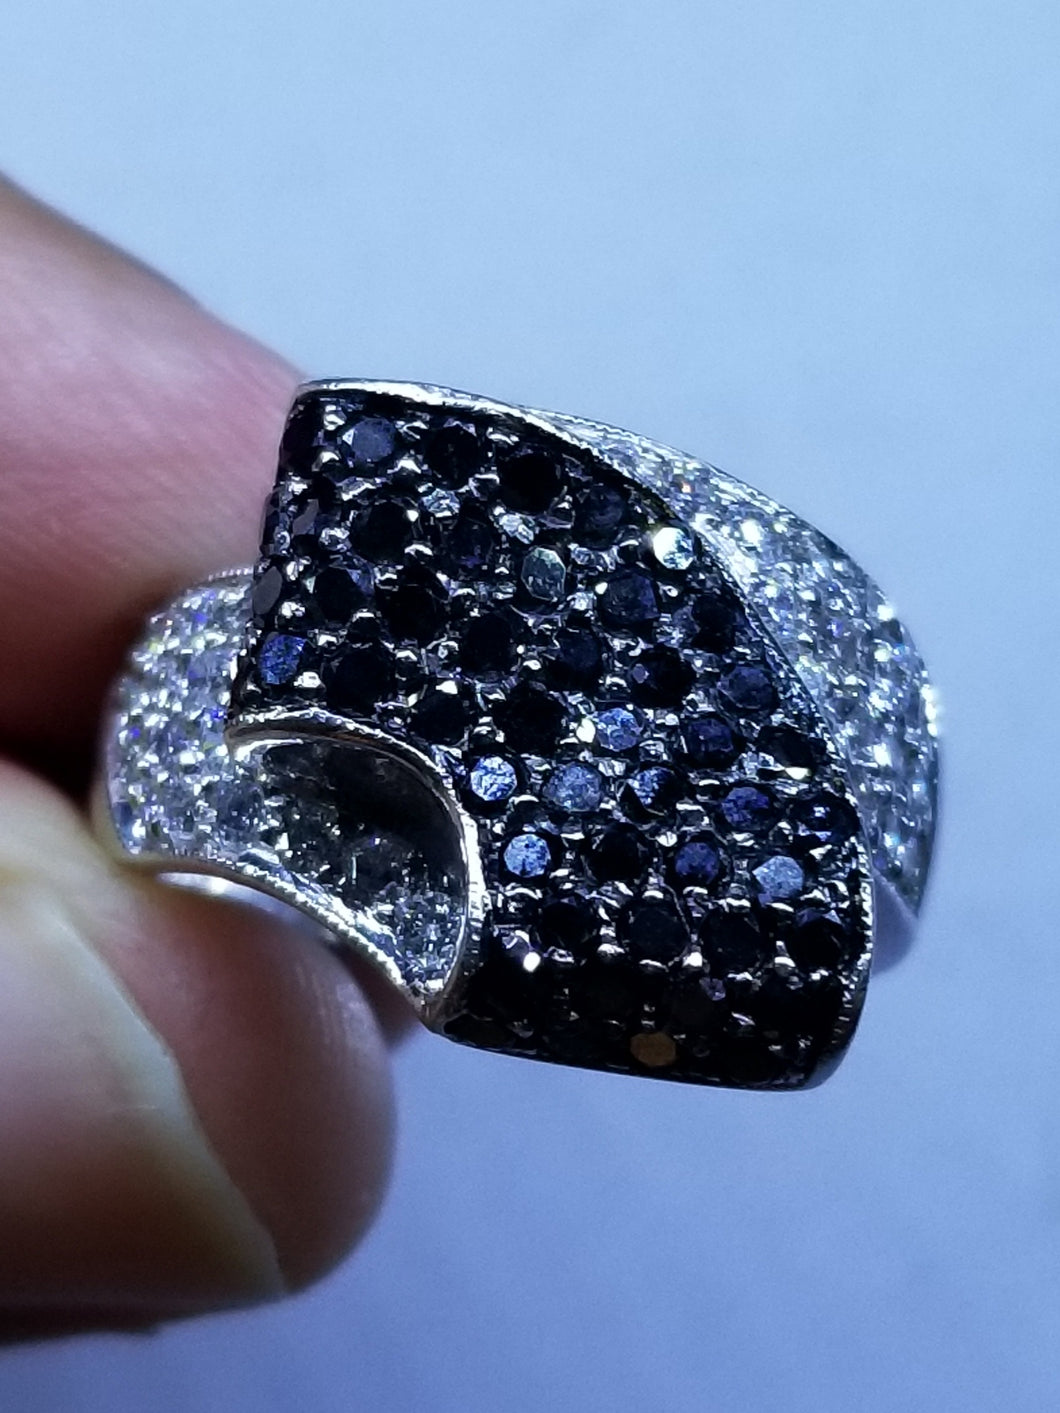 Black and white Round  Diamond Ring, 1.01 Carat Diamond Ring,14K Ring 4.8gr, Whi